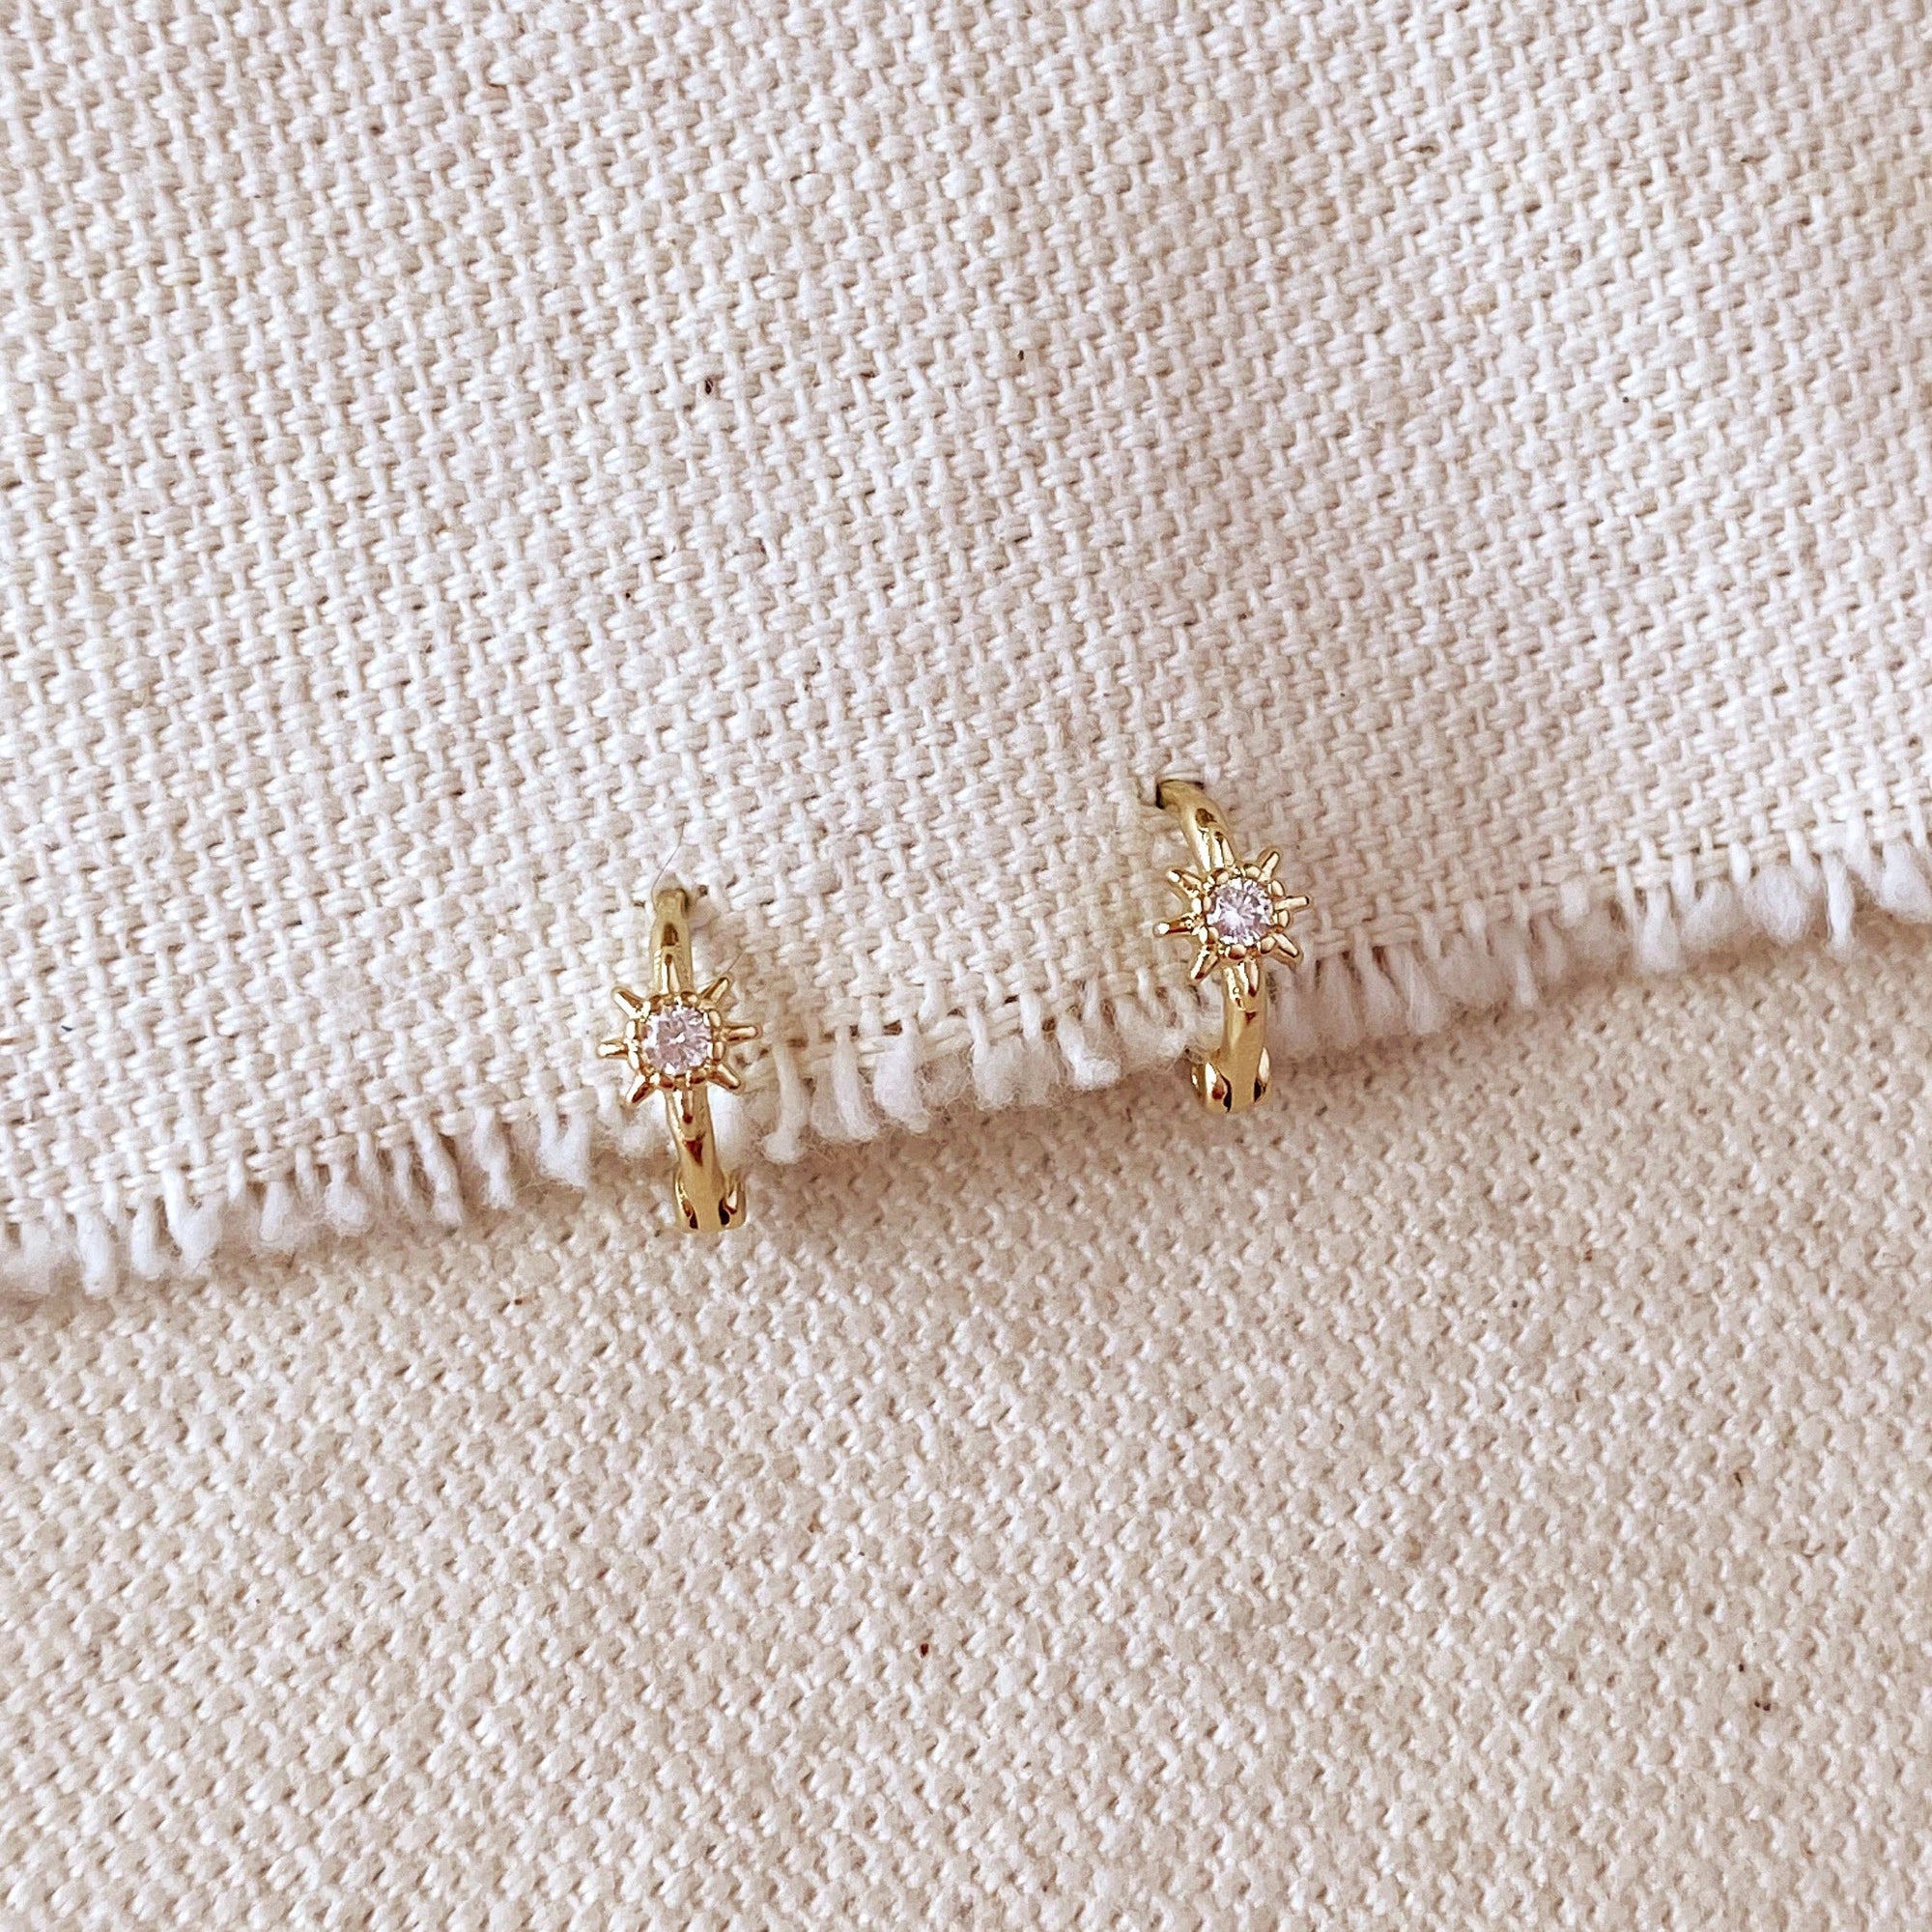 Starburst Clicker Earrings, 18k Gold Filled